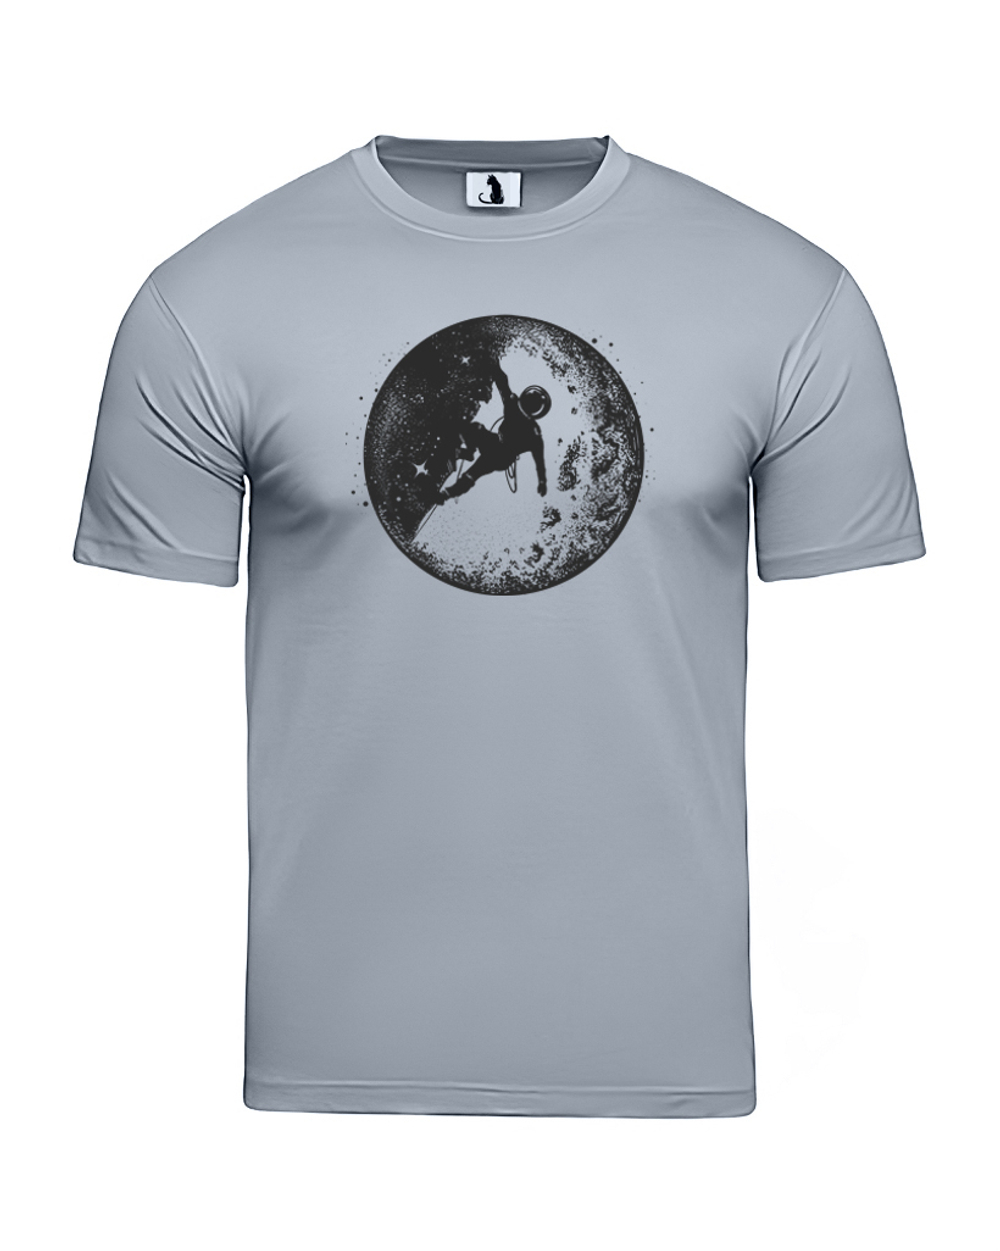 Футболка Космонавт на Луне unisex серая с черным рисунком